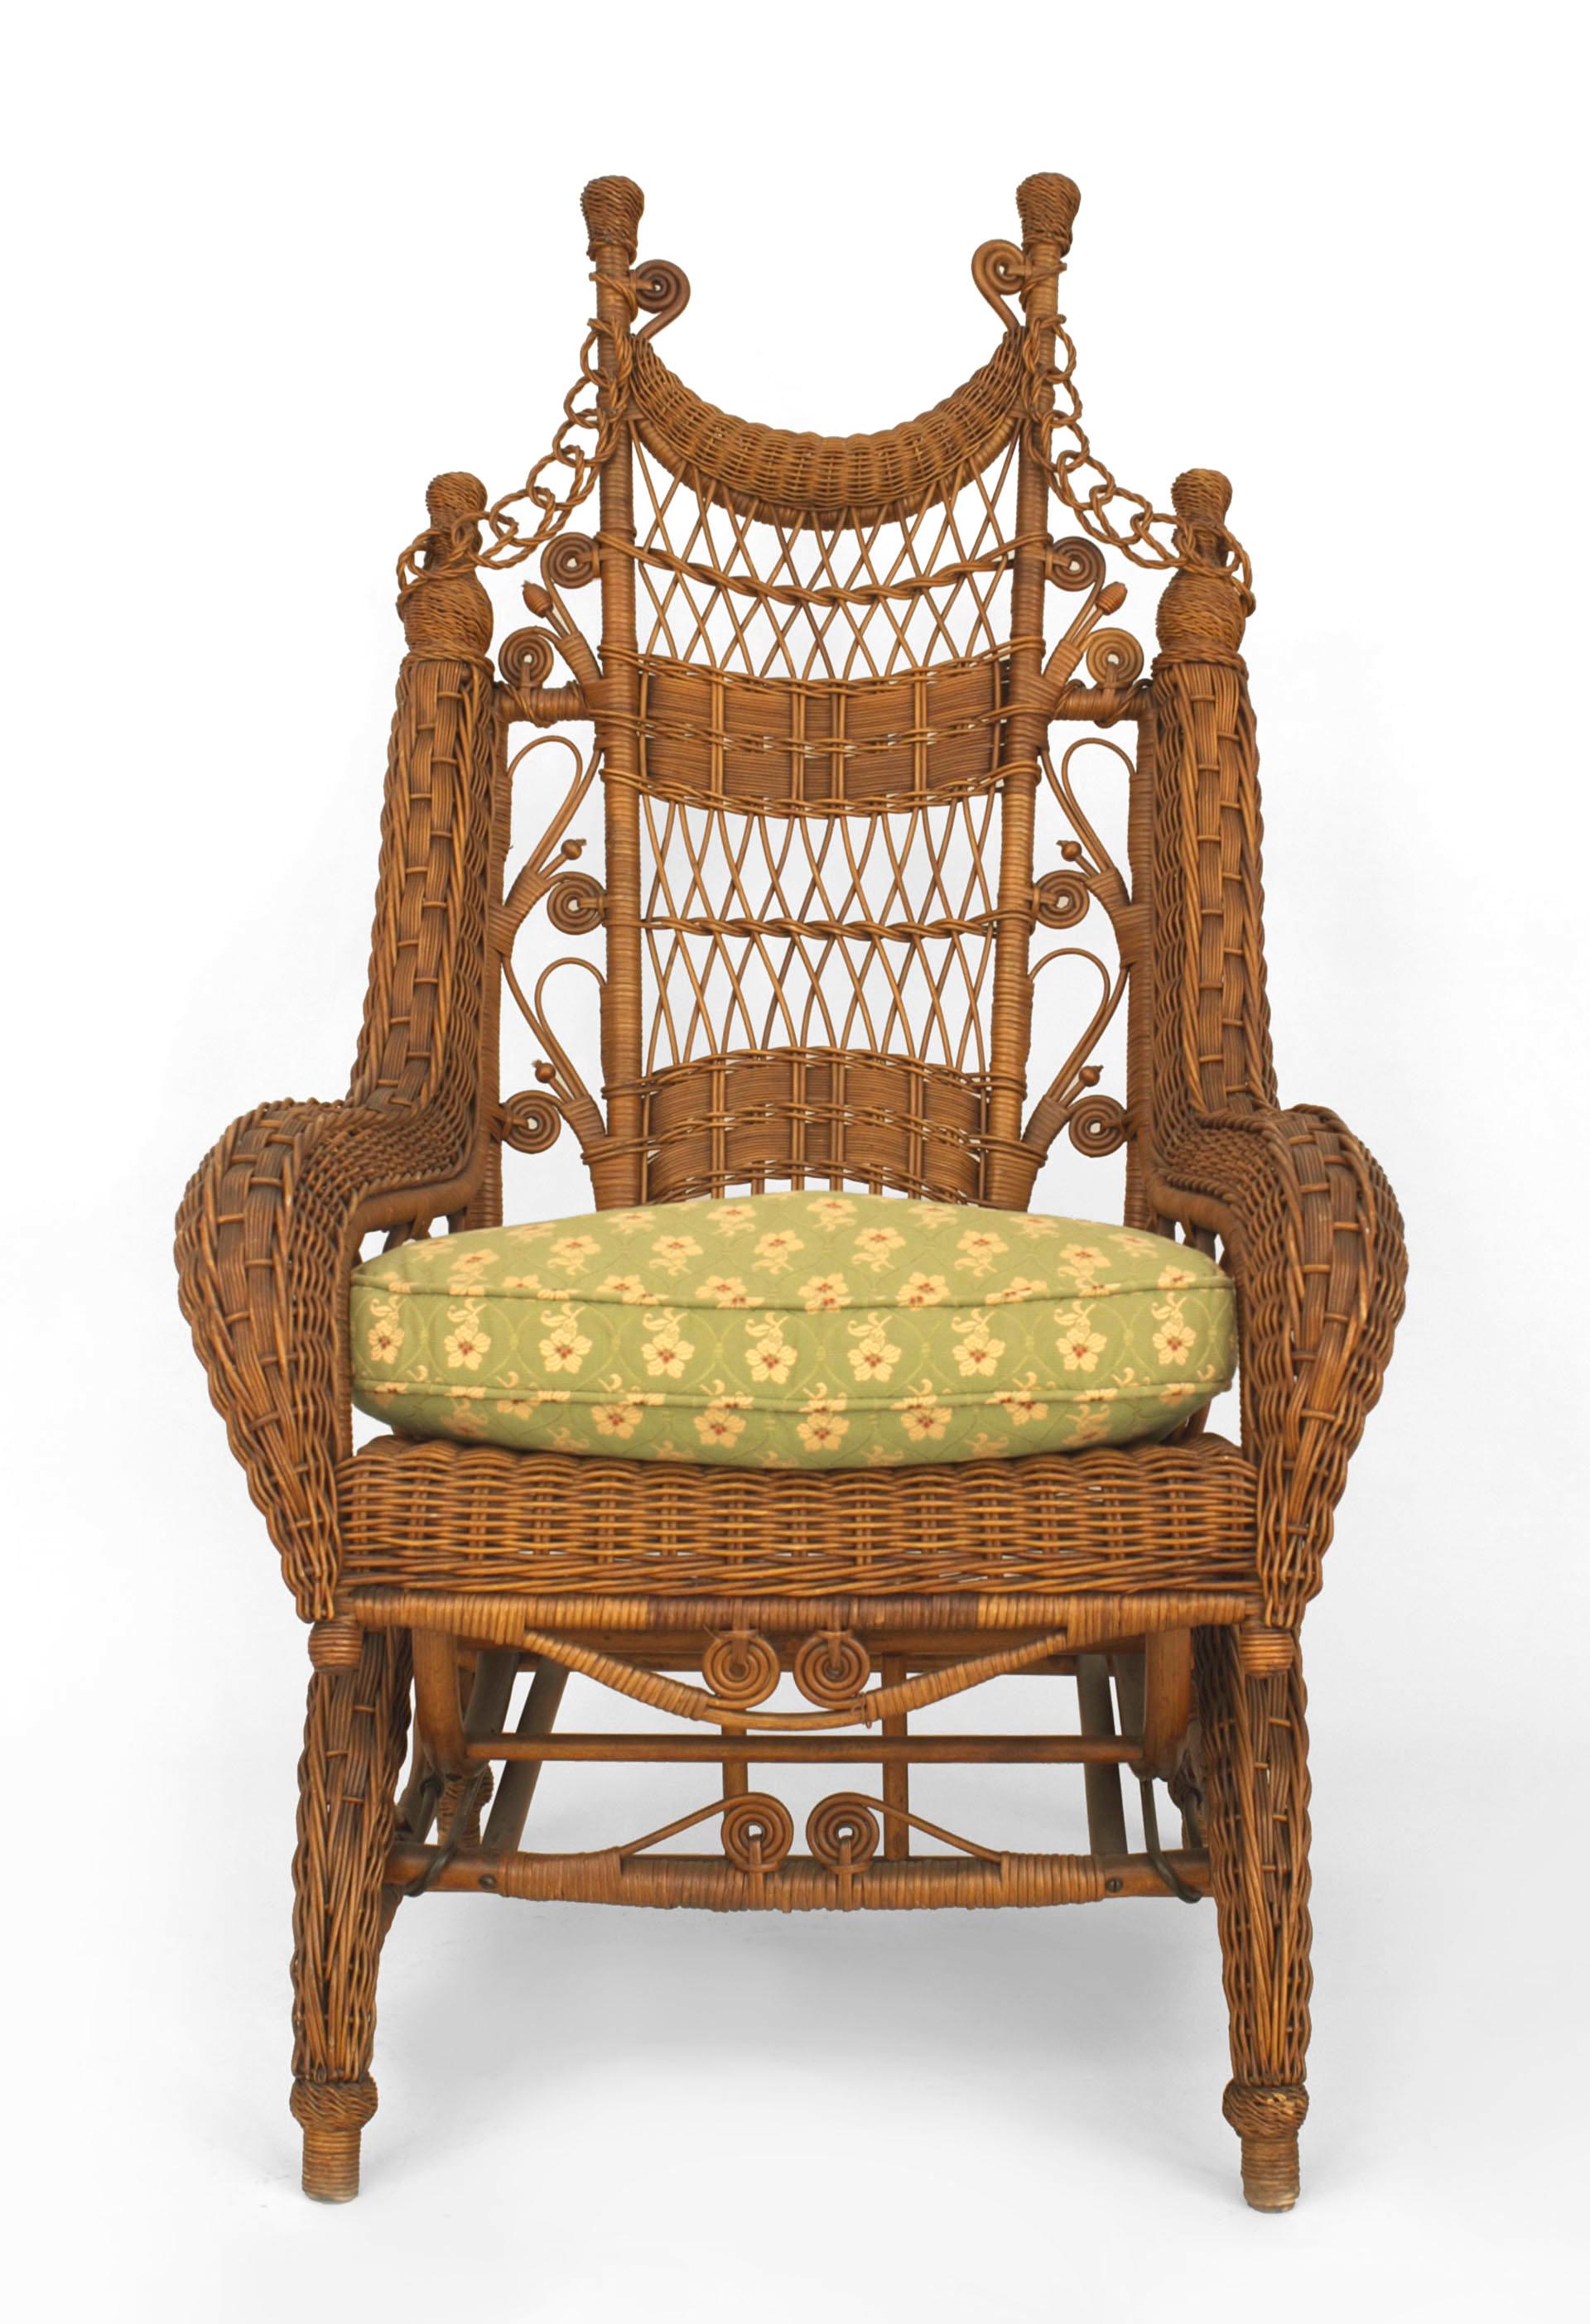 Chaise à bascule victorienne en osier naturel, ornée, à haut dossier, avec des bras roulés tissés, des fleurons et une chaîne à maillons sur le dossier (HEYWOOD BROS)
